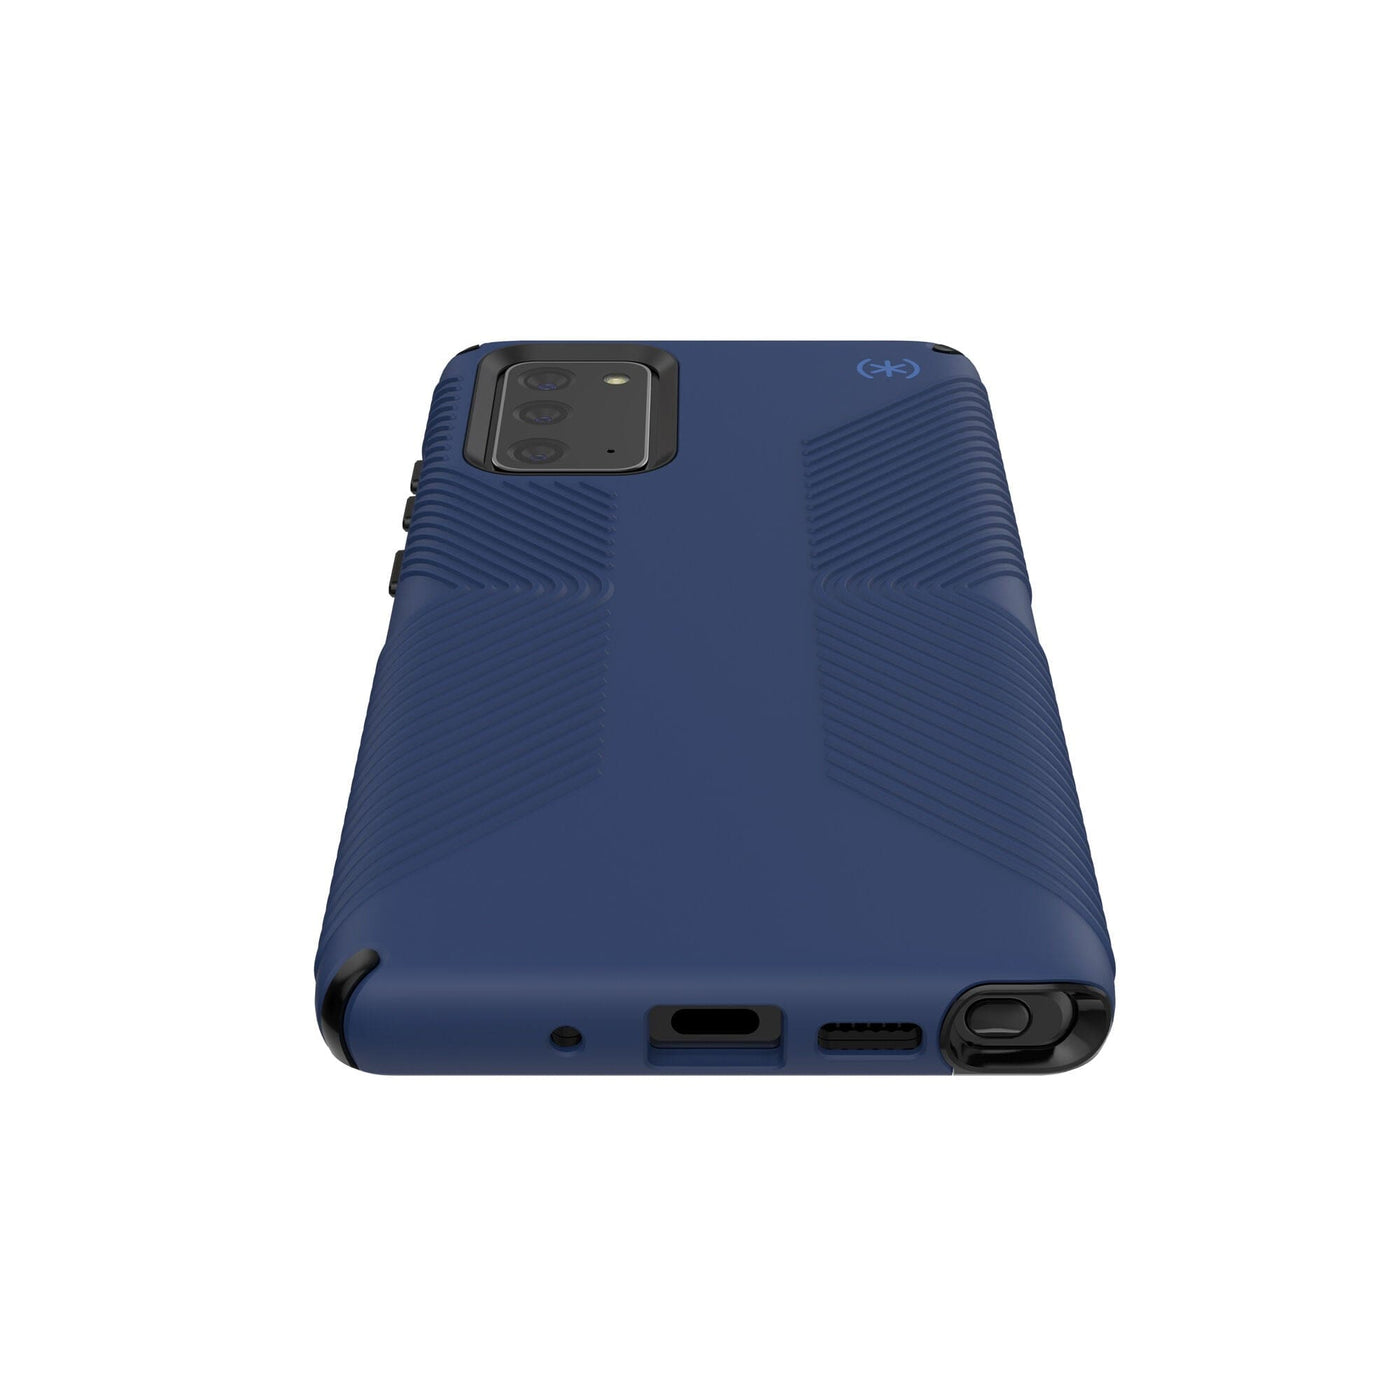 Speck Presidio2 Grip iPhone 12 mini Cases Best iPhone 12 mini - $44.99